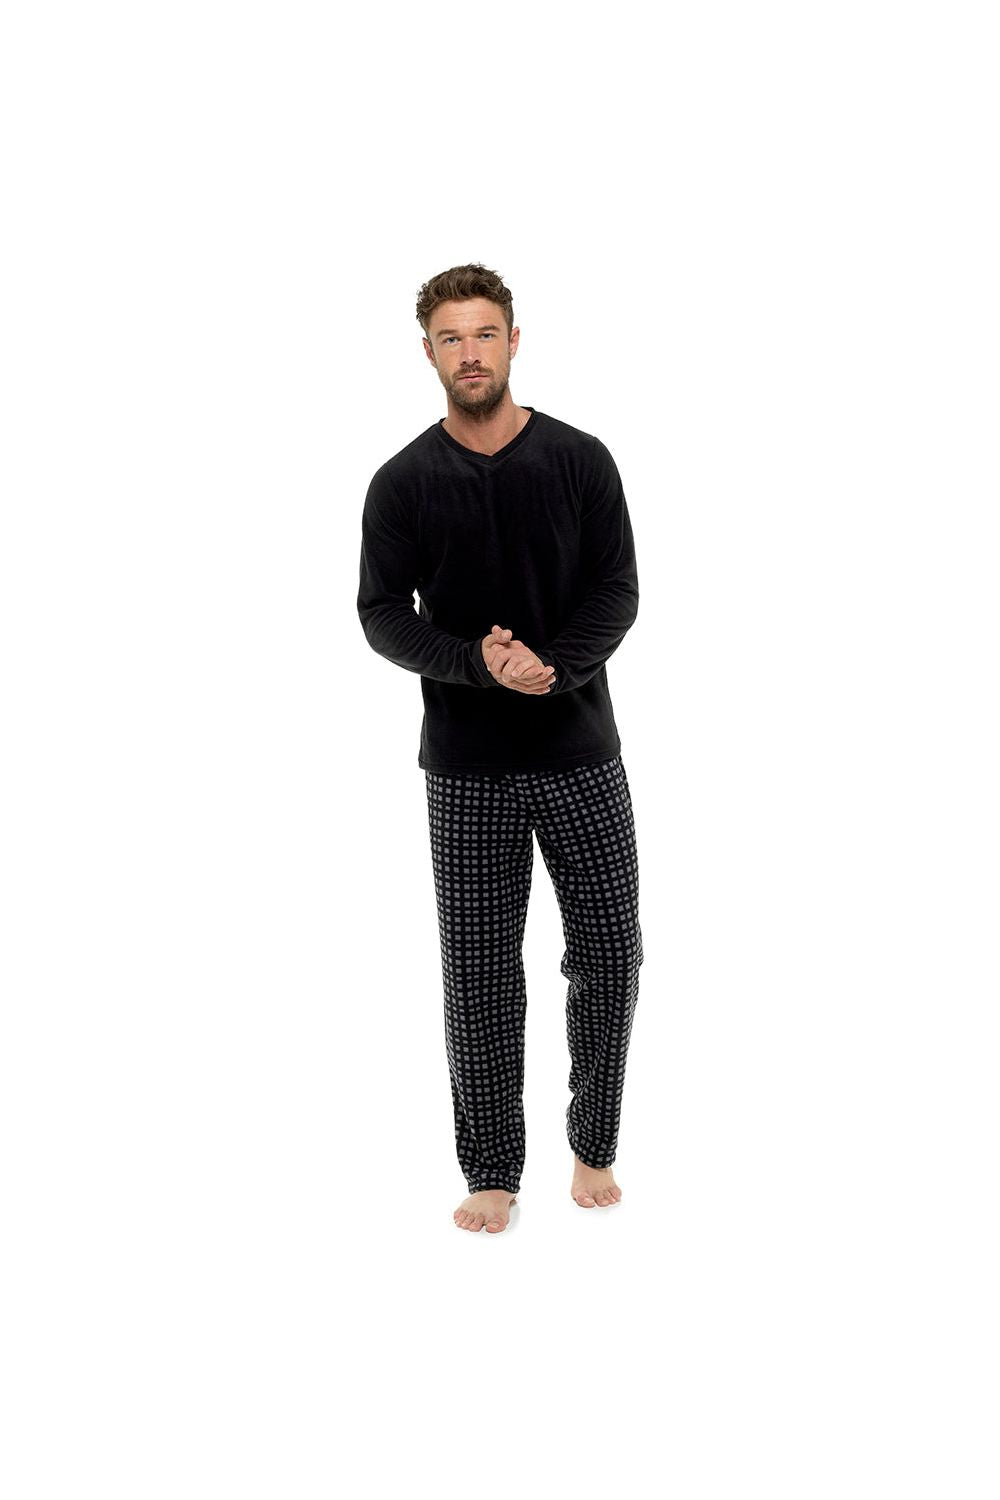 Men's Black Fleece Top and Checked Bottoms Pyjama Set